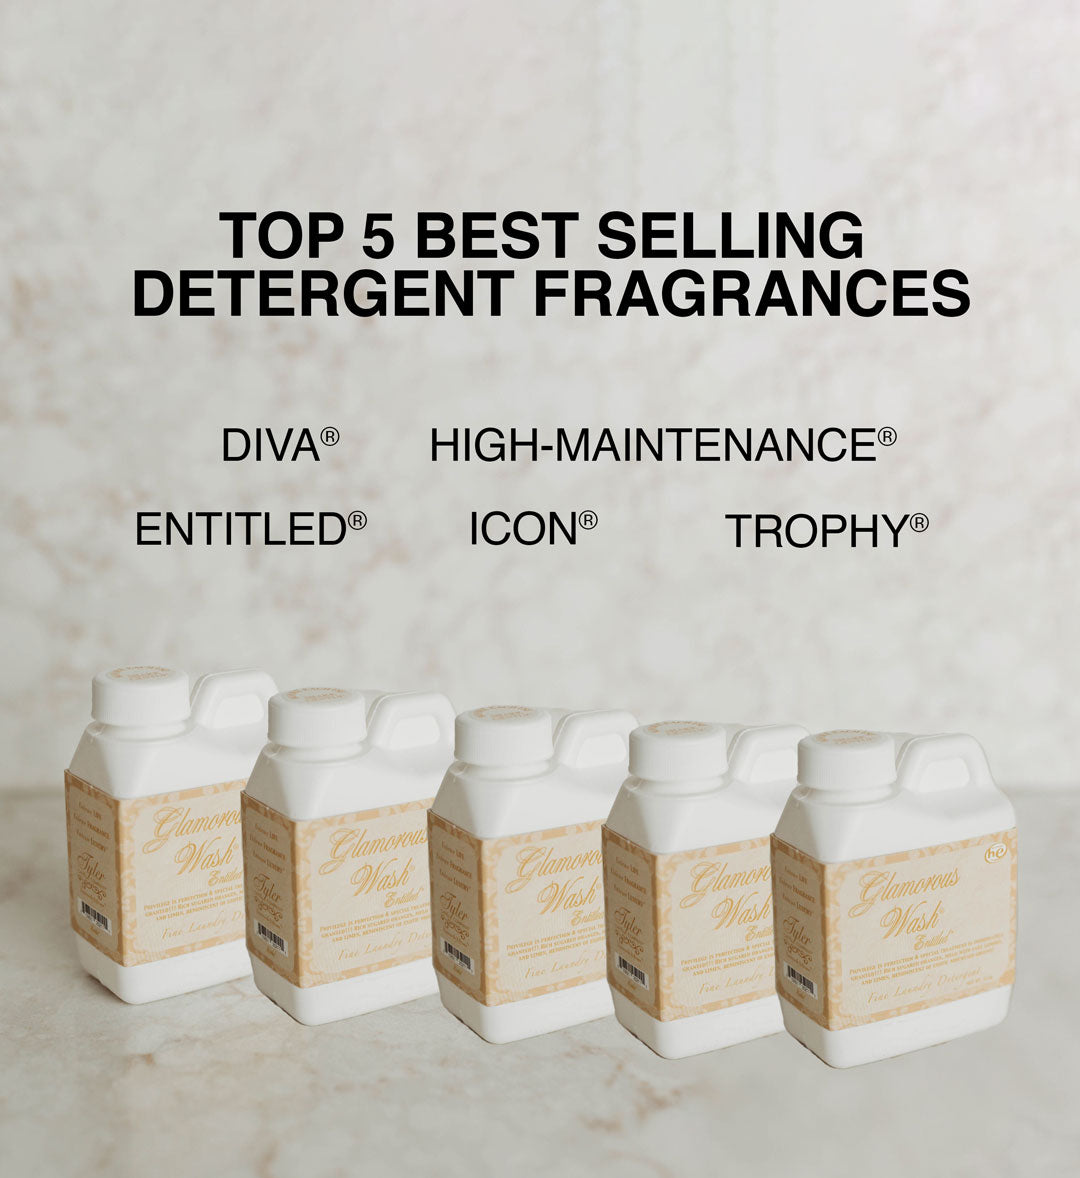 GLAMOROUS WASH® Detergent Sampler Bundle - Top 5 Best Sellers - 4oz Sample Bottles